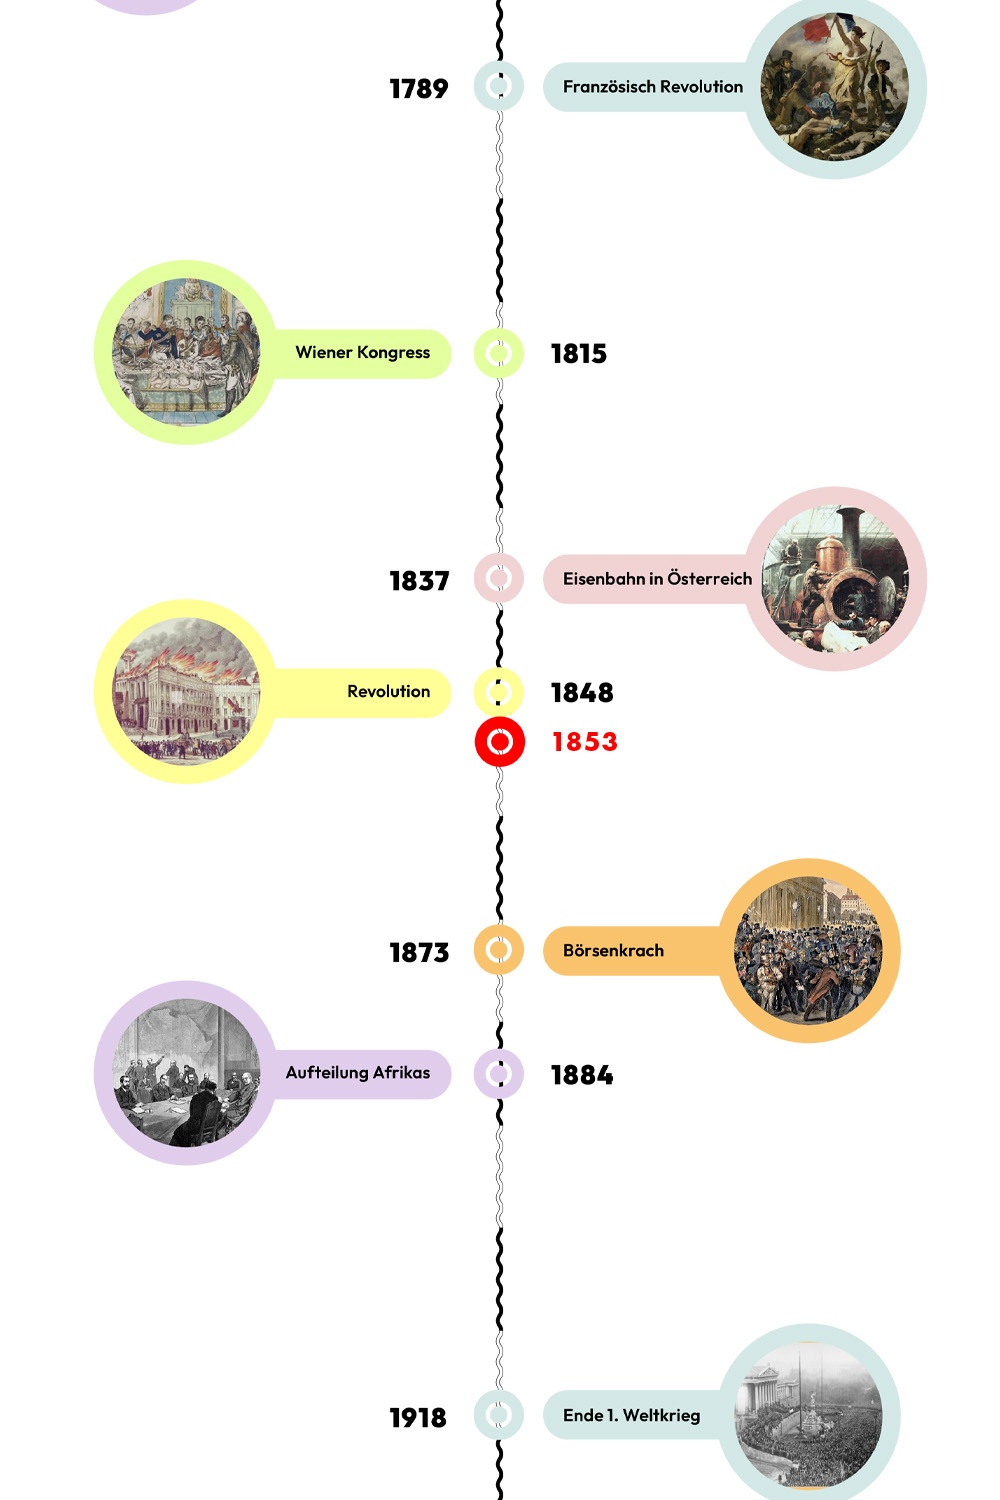 Zeitstrahl mit historischen Ereignissen - 1853 ist hervorgehoben. © wasbishergeschah.at